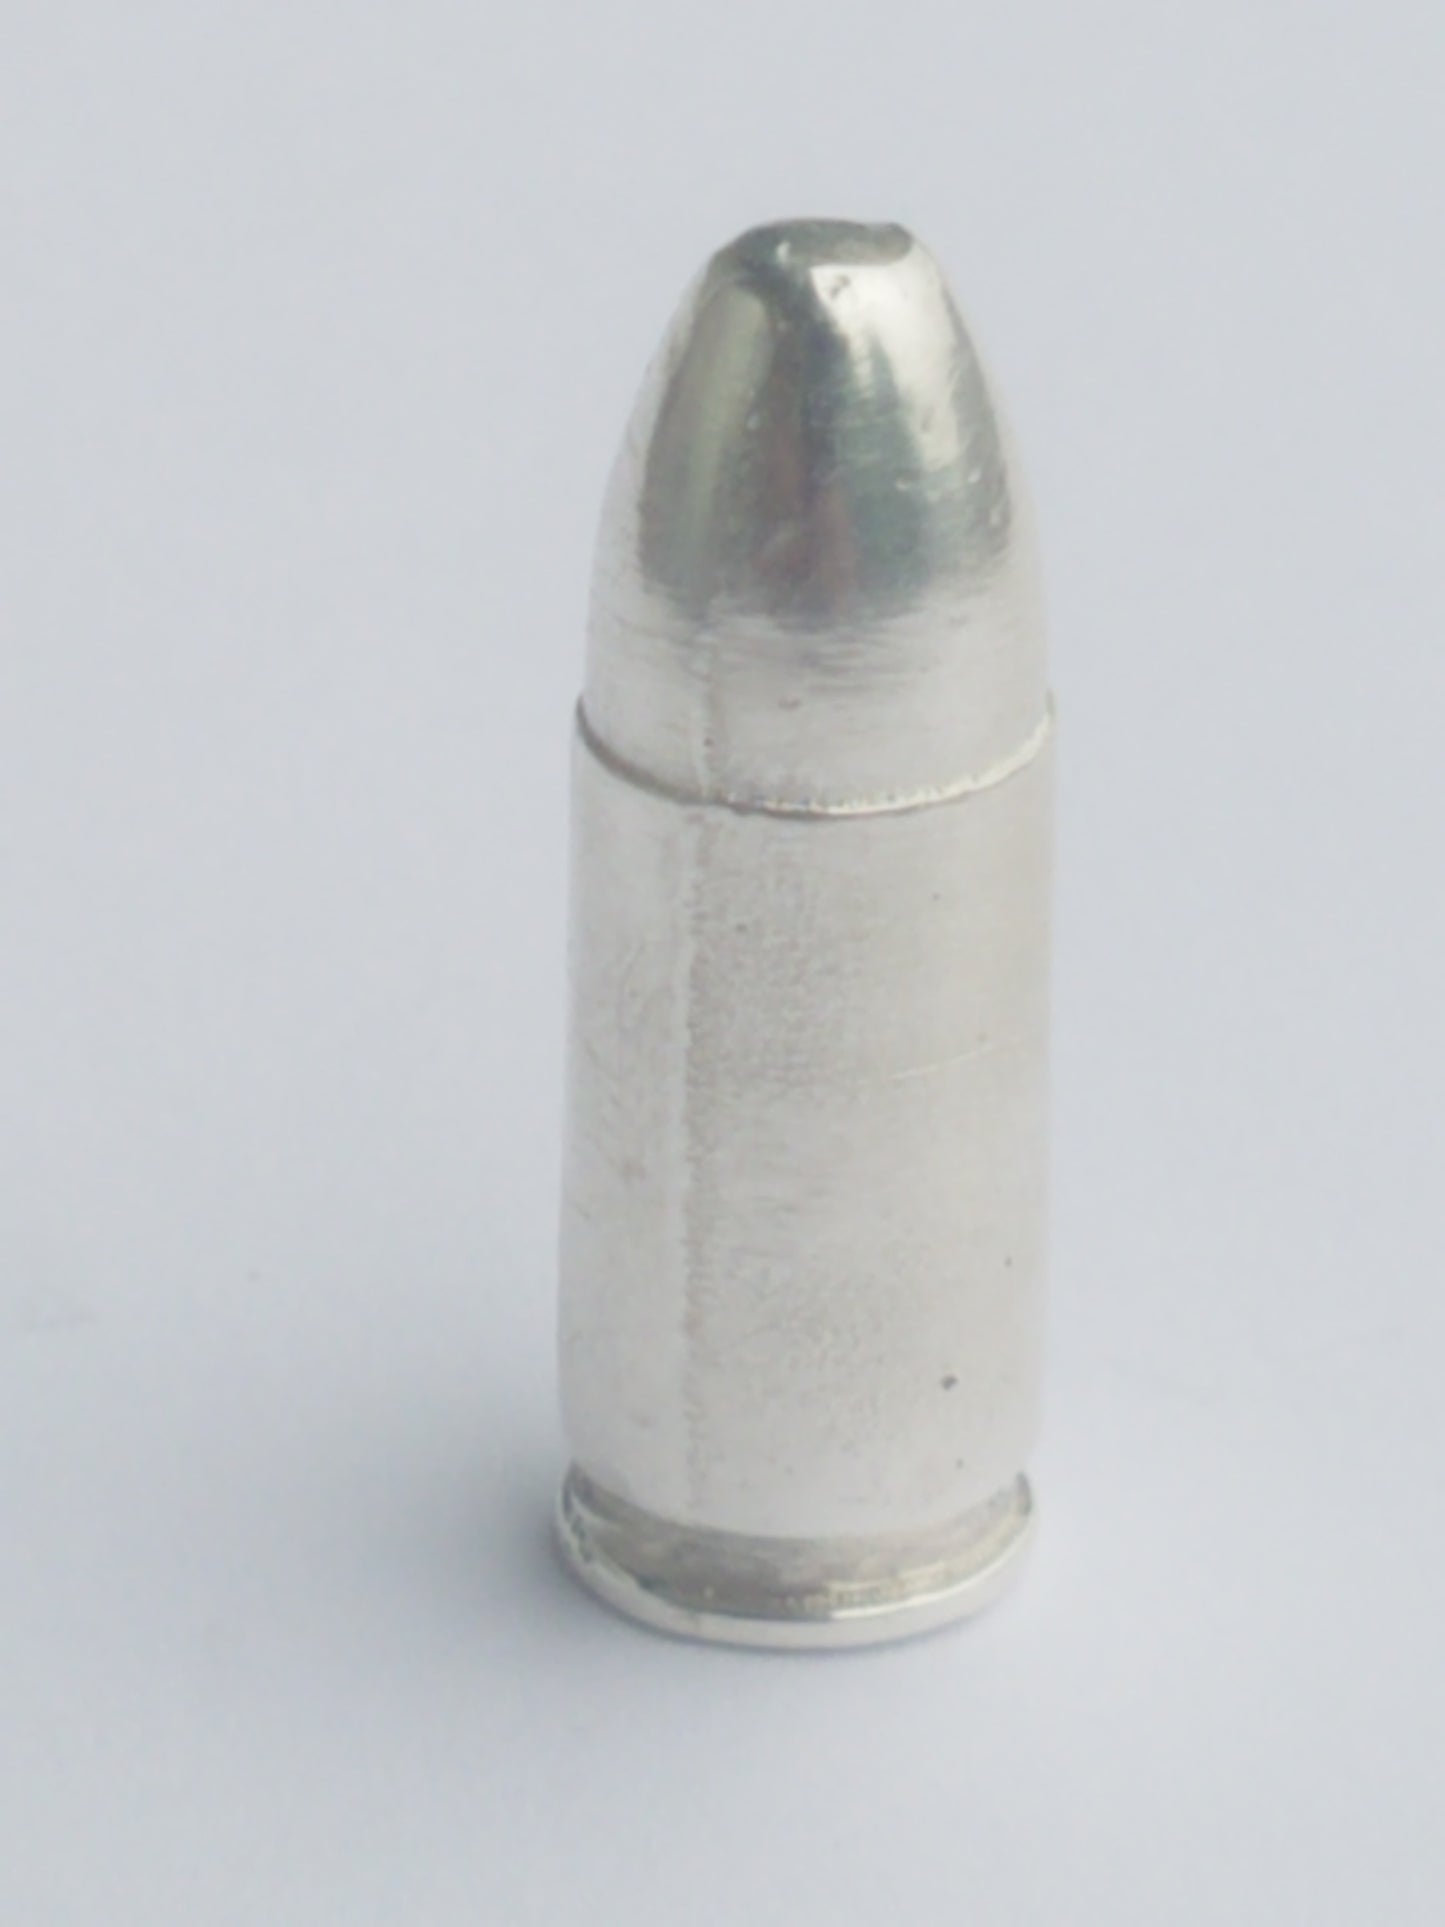 Bullet Bullion 9mm 17 grams 999 Fine Silver